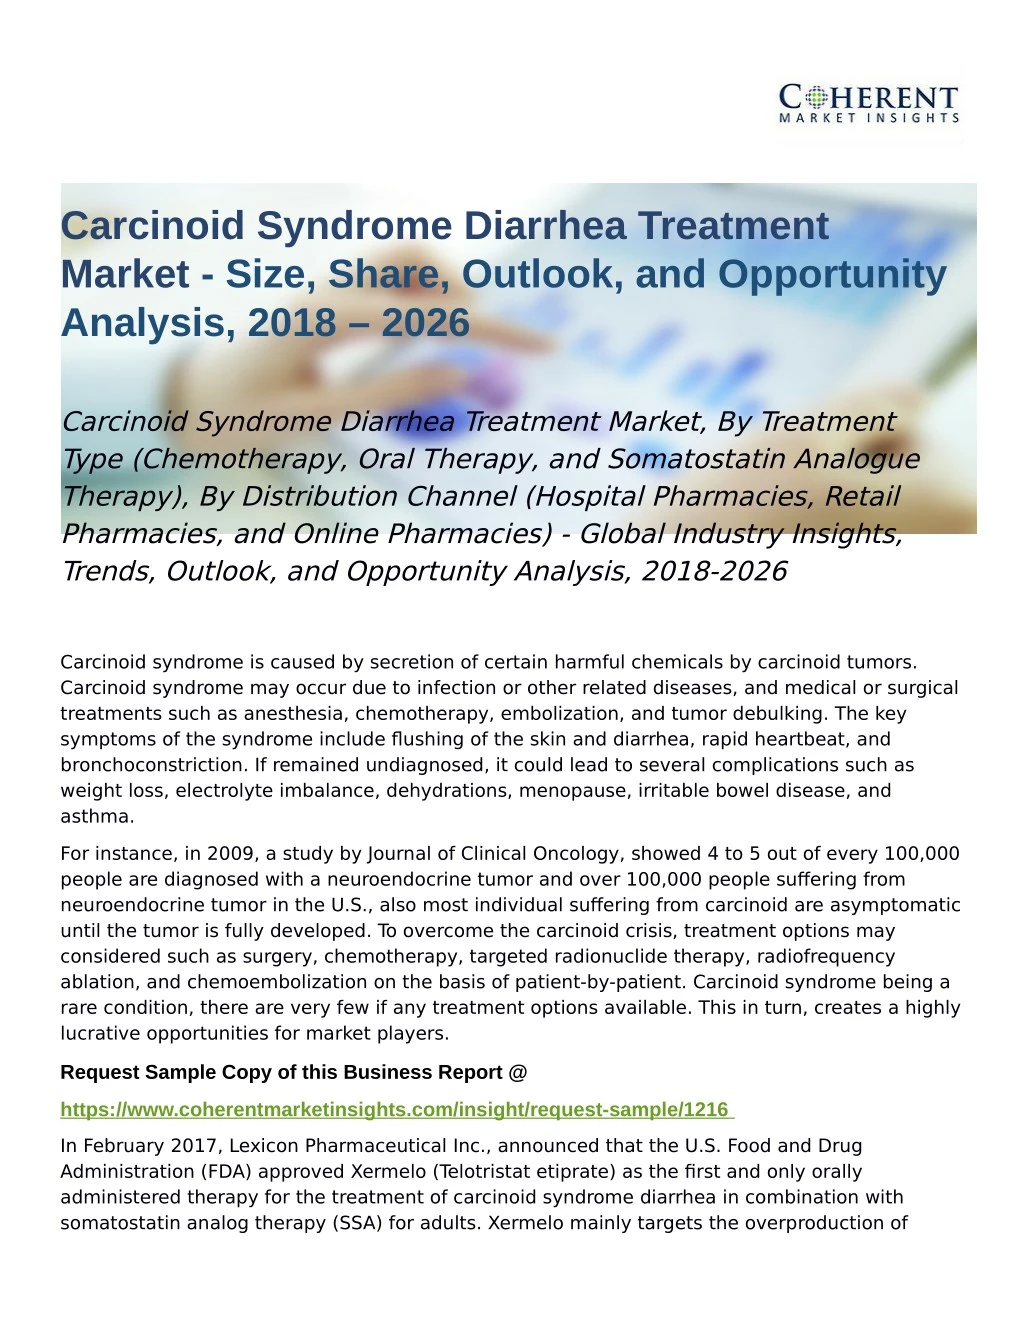 carcinoid syndrome diarrhea treatment market size